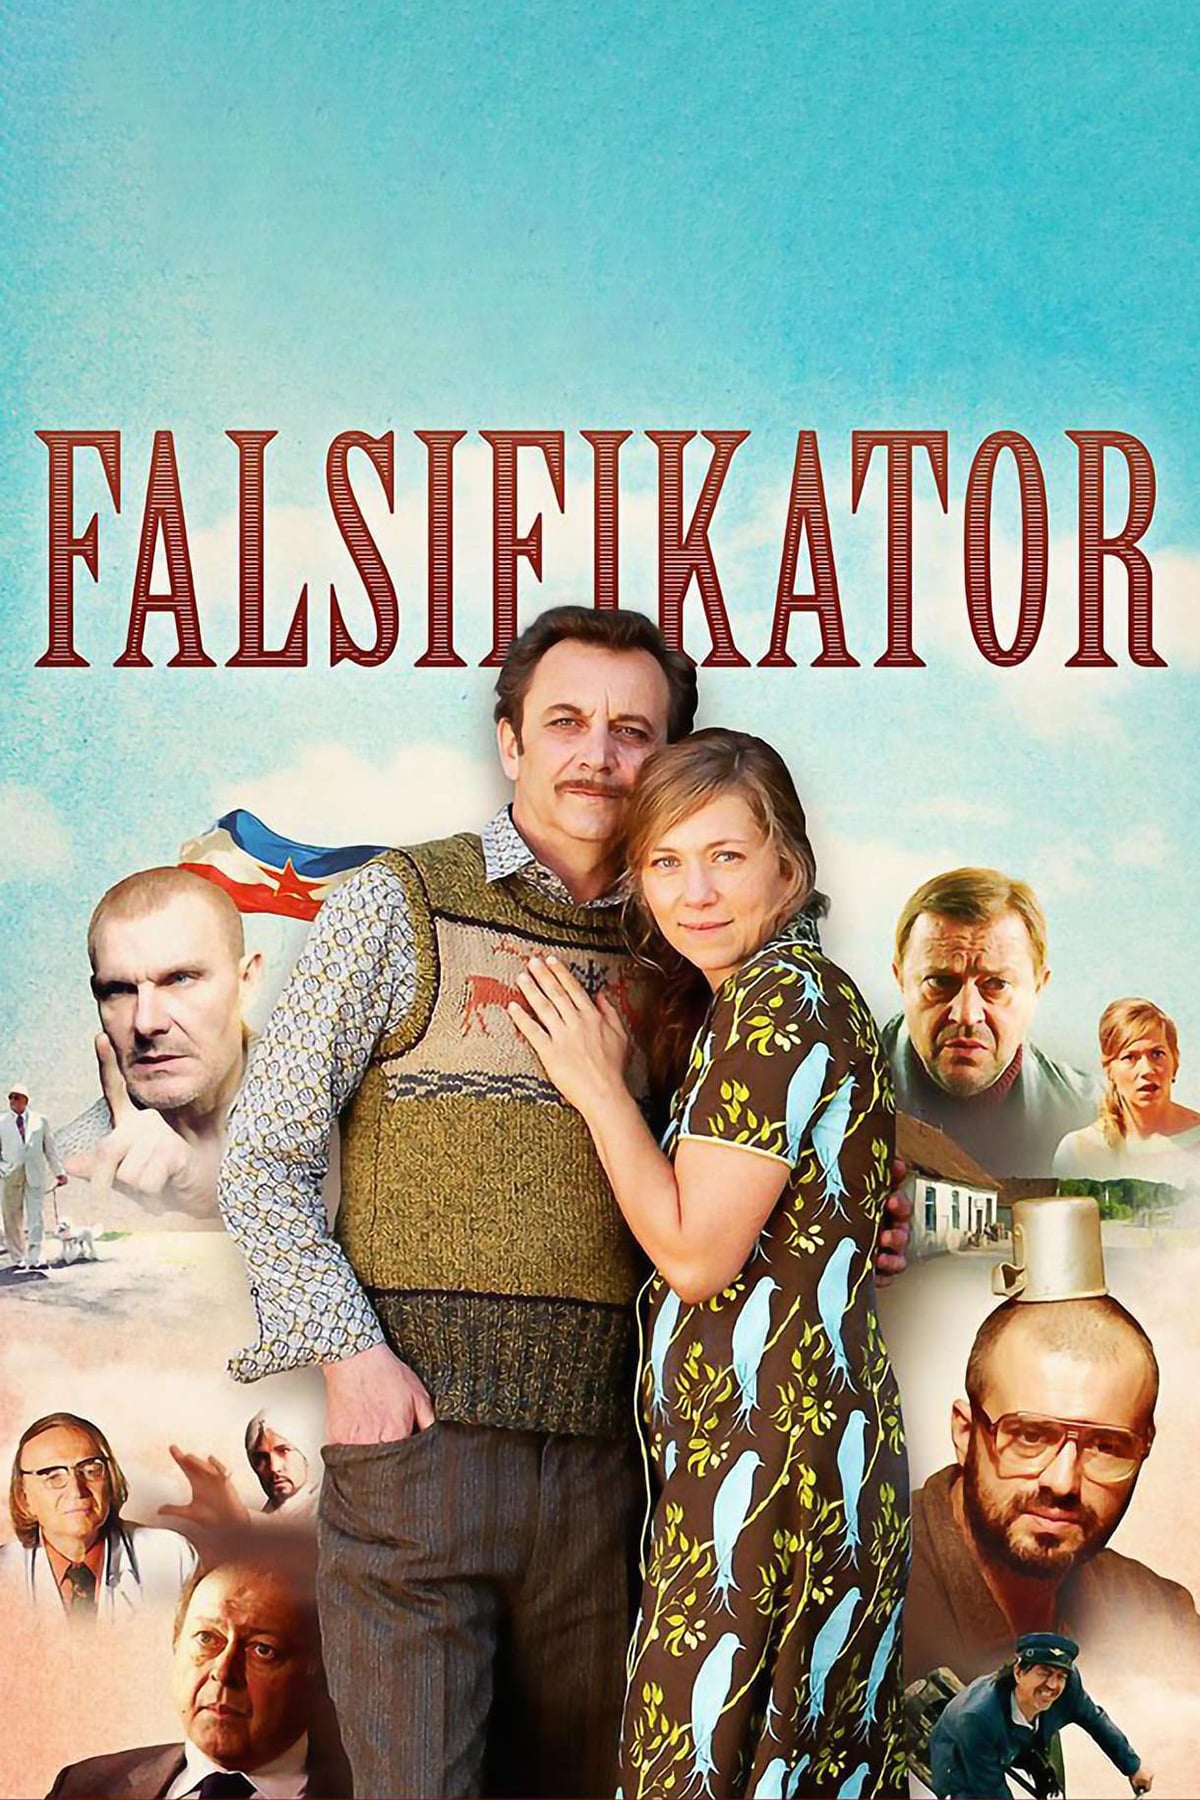 Falsifier (2013)